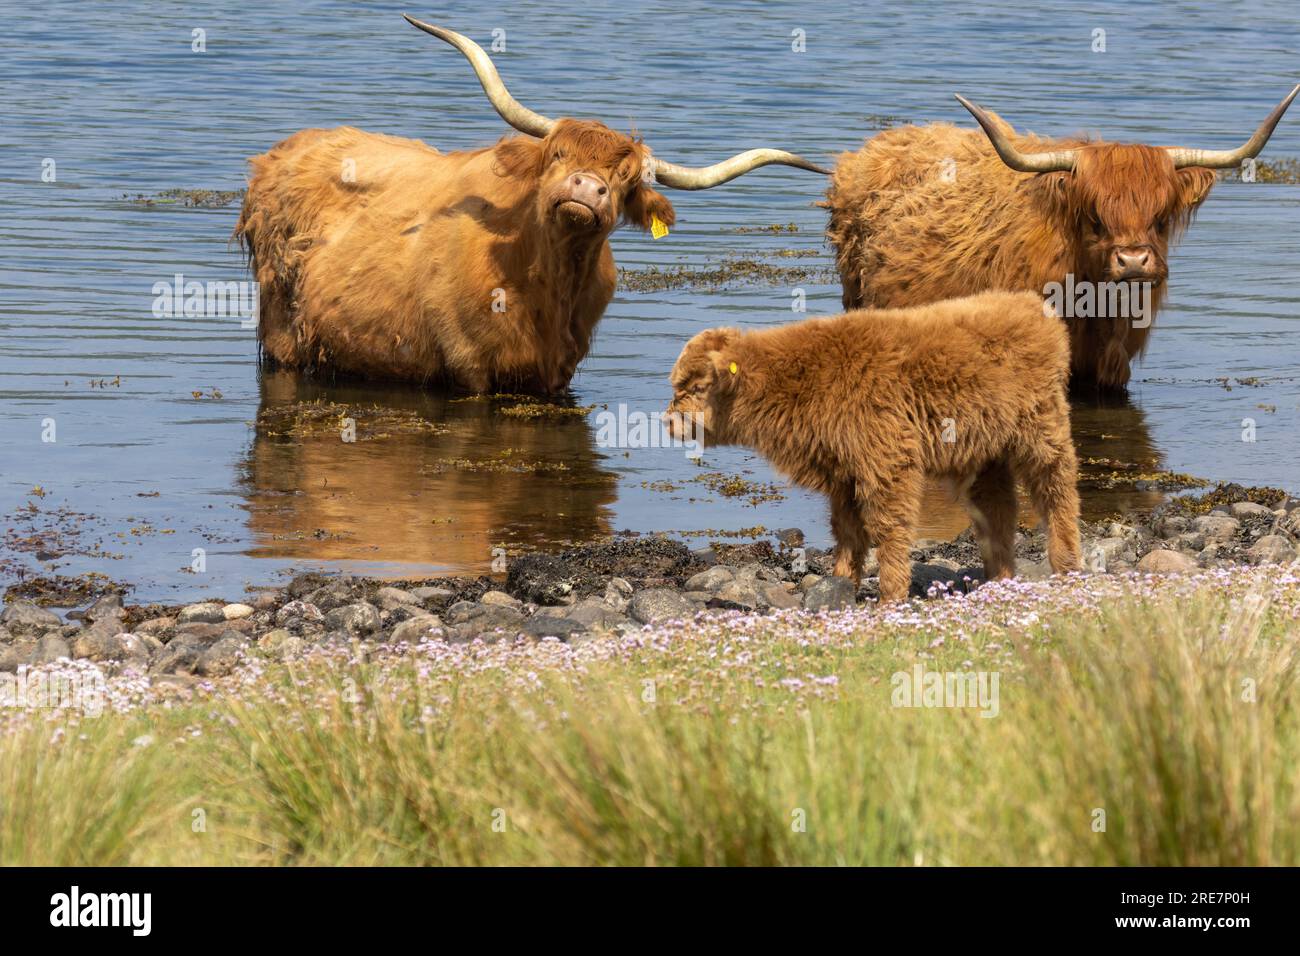 Deux vaches brunes adultes des hautes terres se refroidissant dans l'eau un jour très got avec un mignon veau furieux debout sur le rivage Banque D'Images